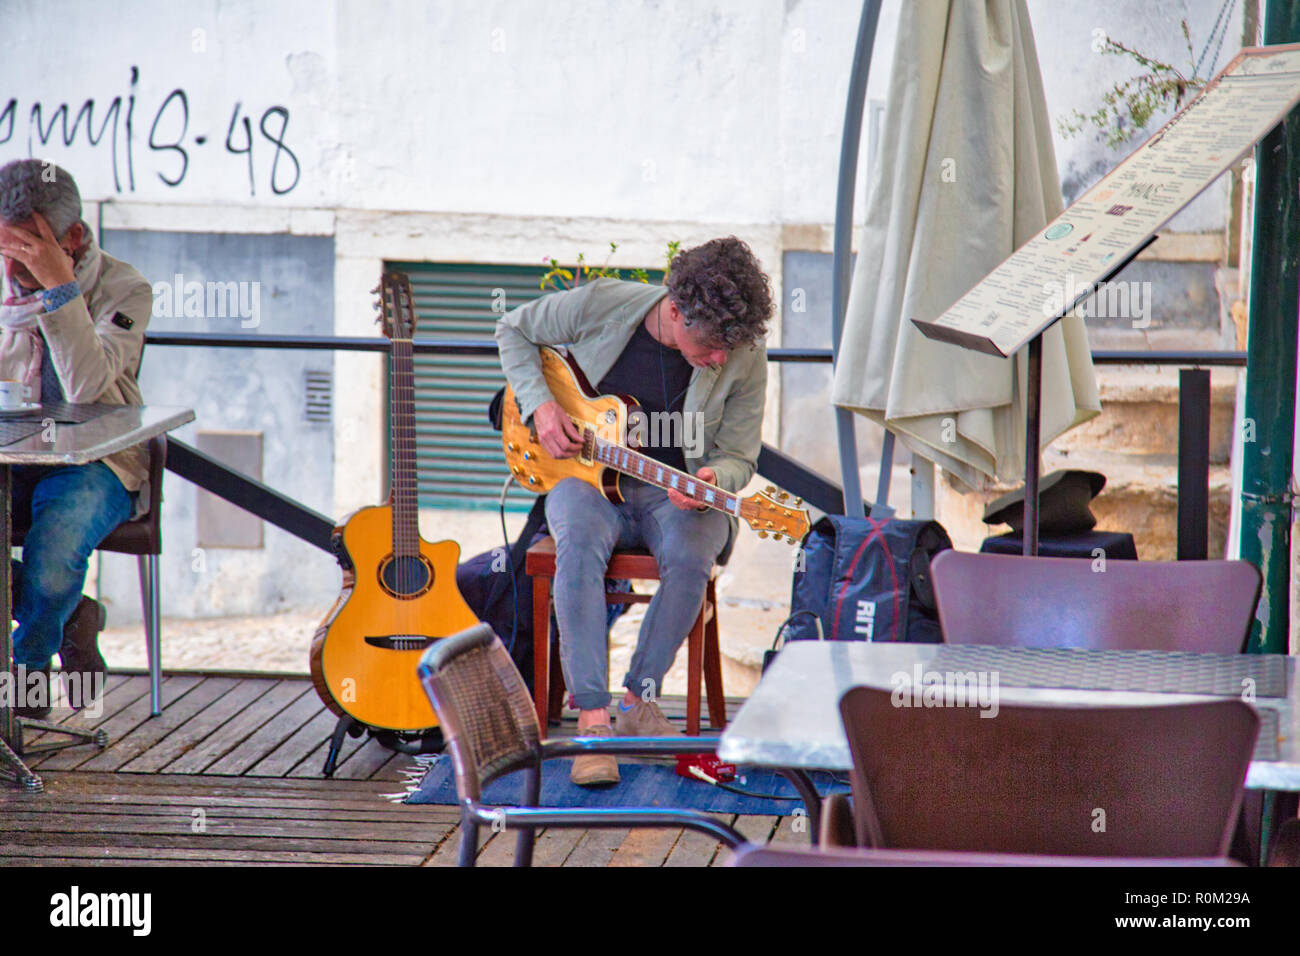 Lisboa, Portugal-October 16, 2017: el músico muchedumbre entretenida en un restaurante con auténtica música en vivo Foto de stock